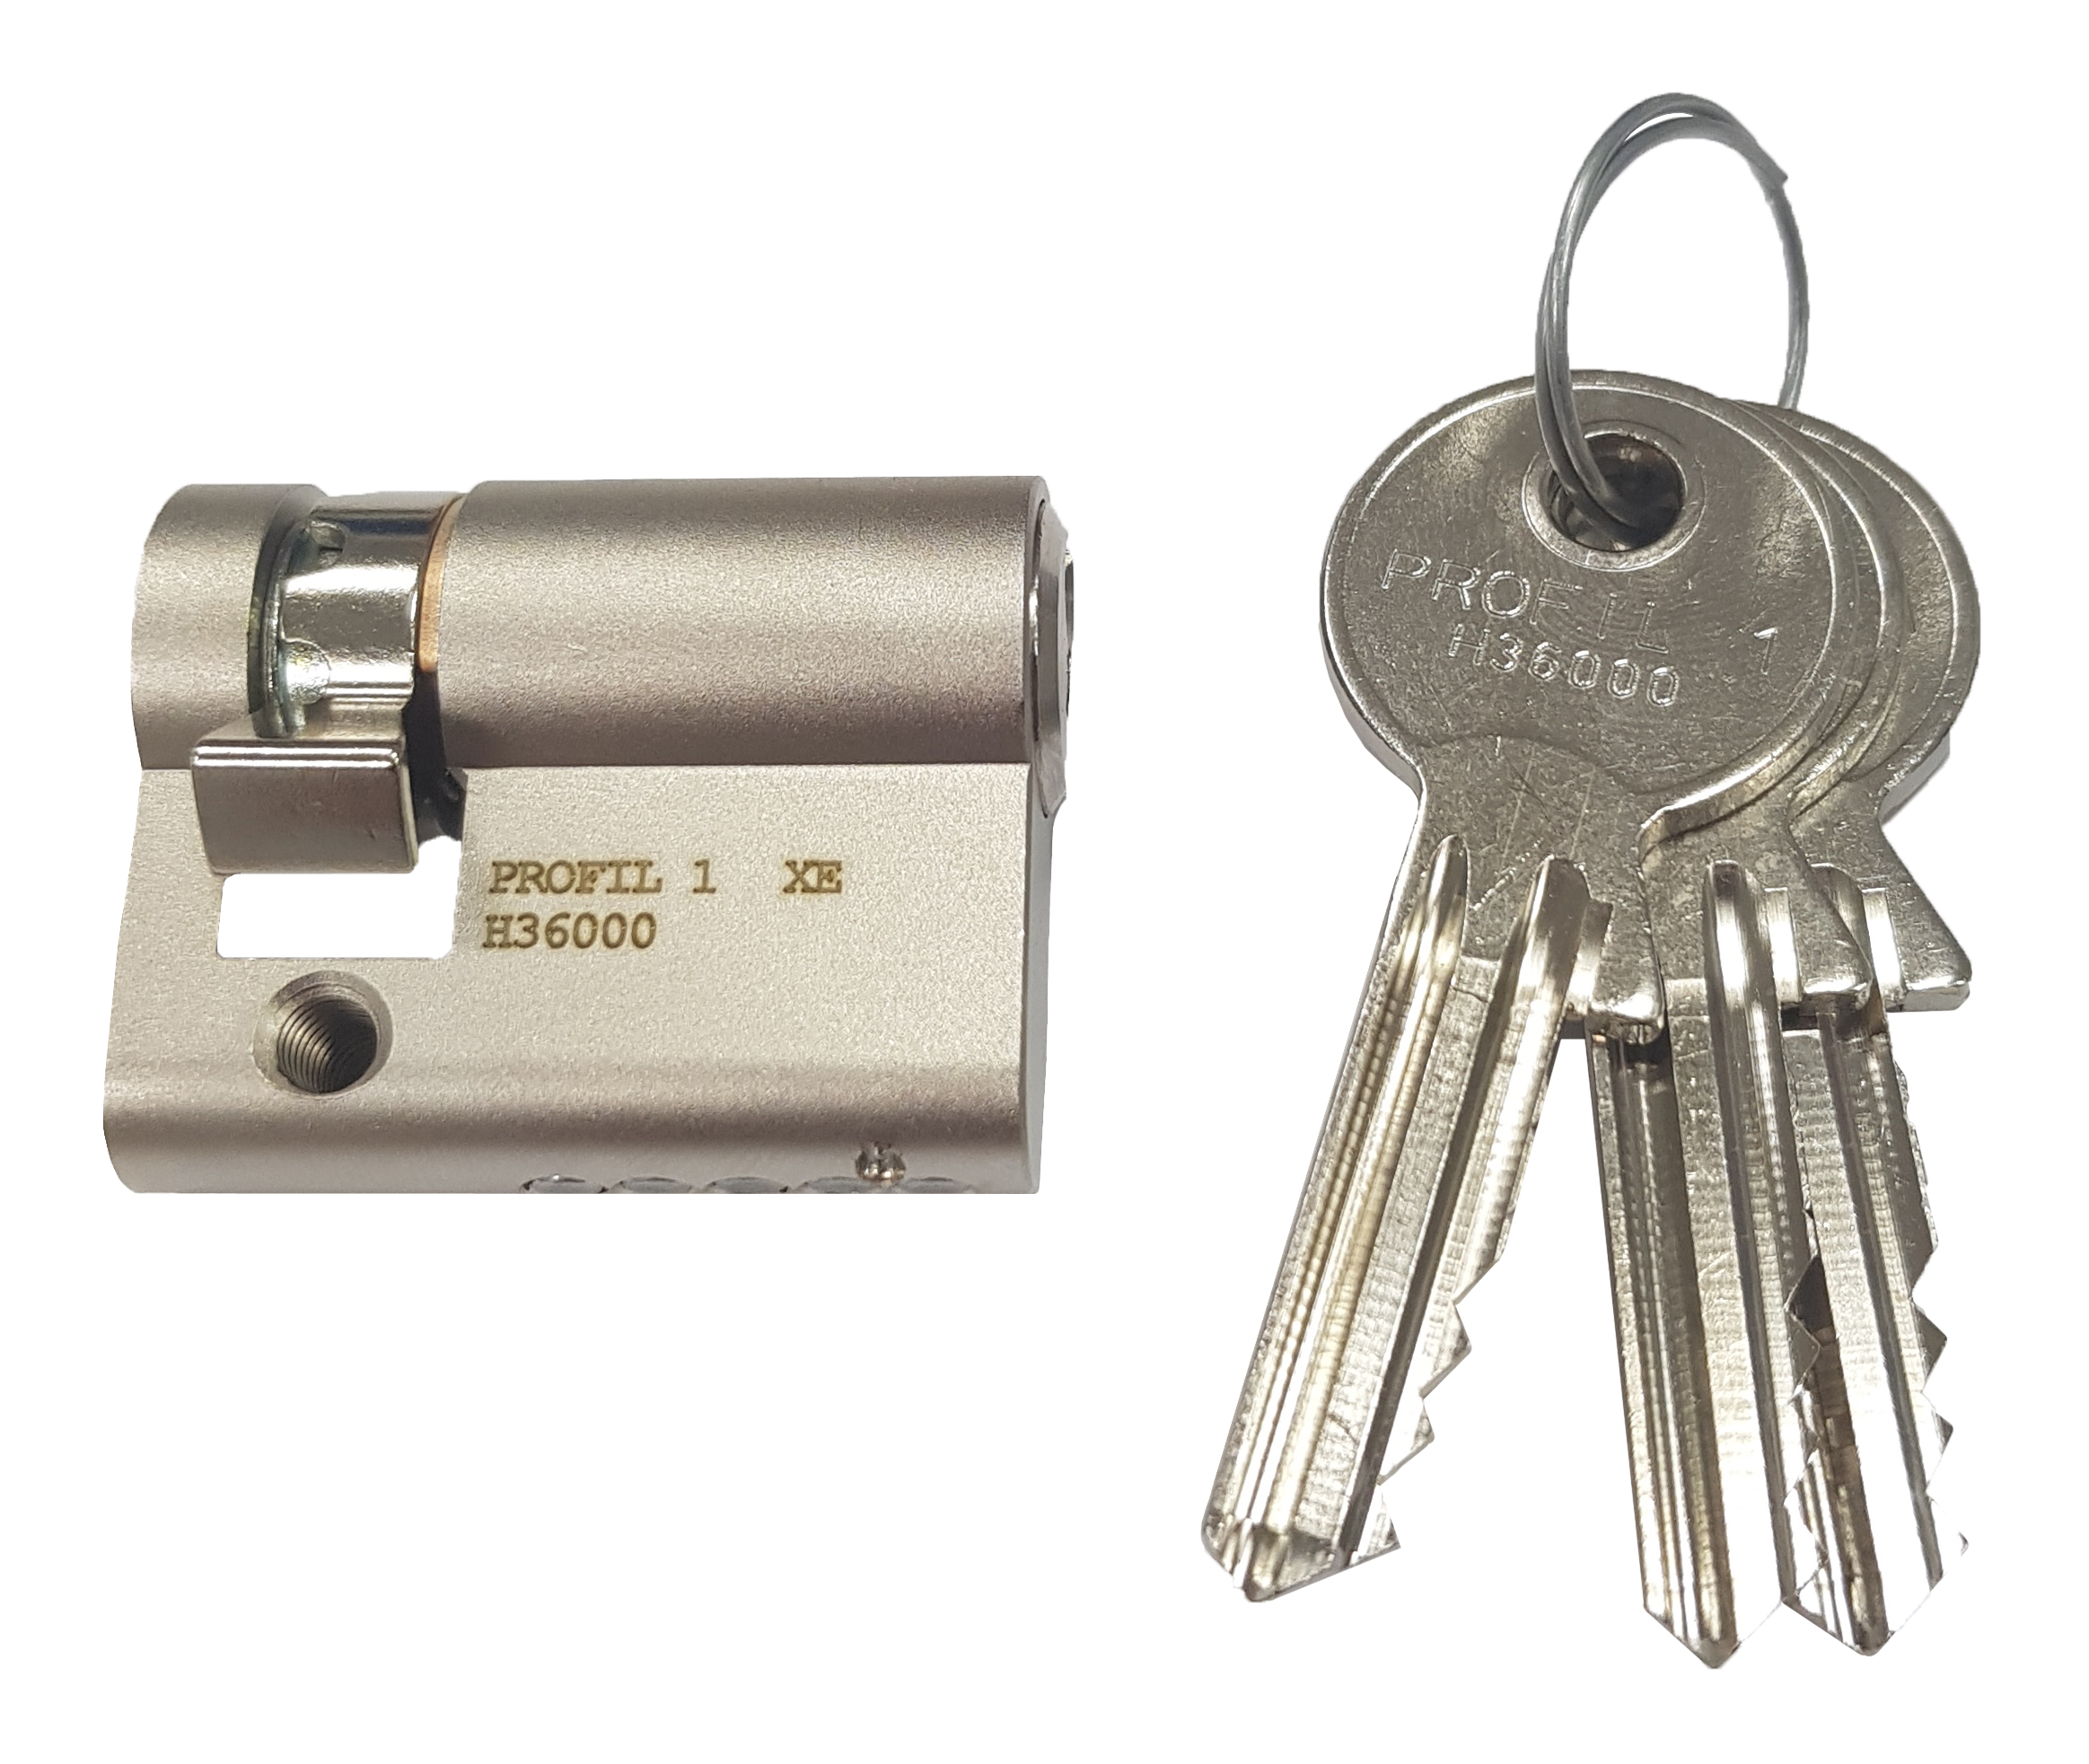 Foto: Halbzylinderschloss H36000 mit 3 Schlüssel, L=40mm (c) Schrack